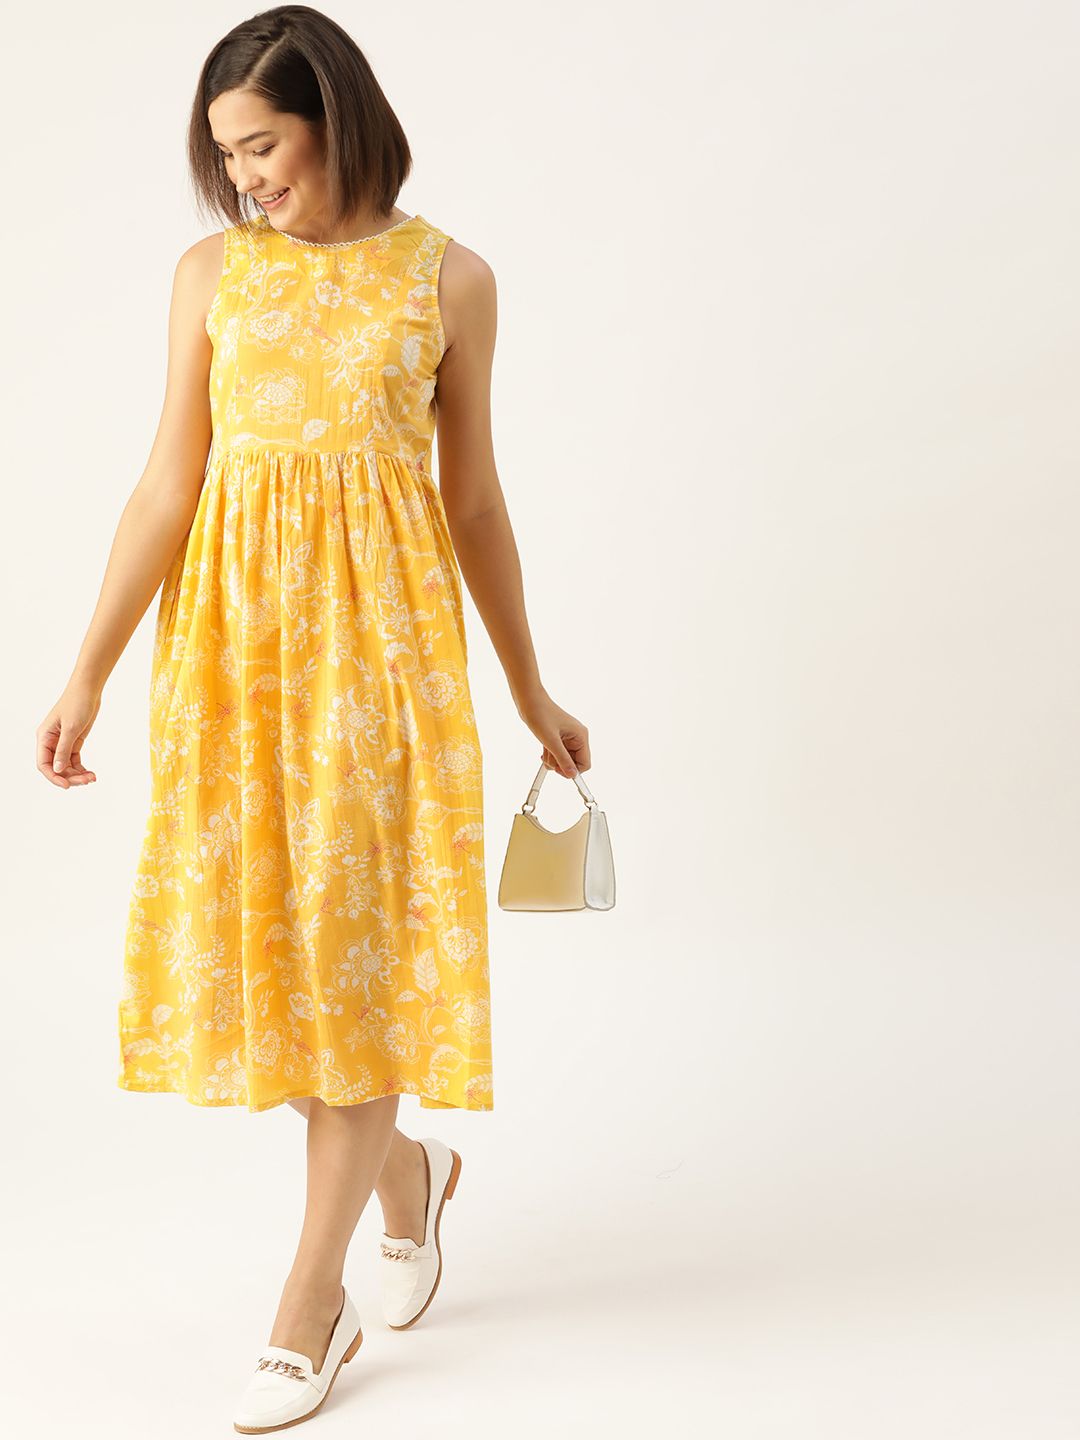 Anouk Yellow & White Ethnic Motifs Cotton A-Line Midi Dress Price in India